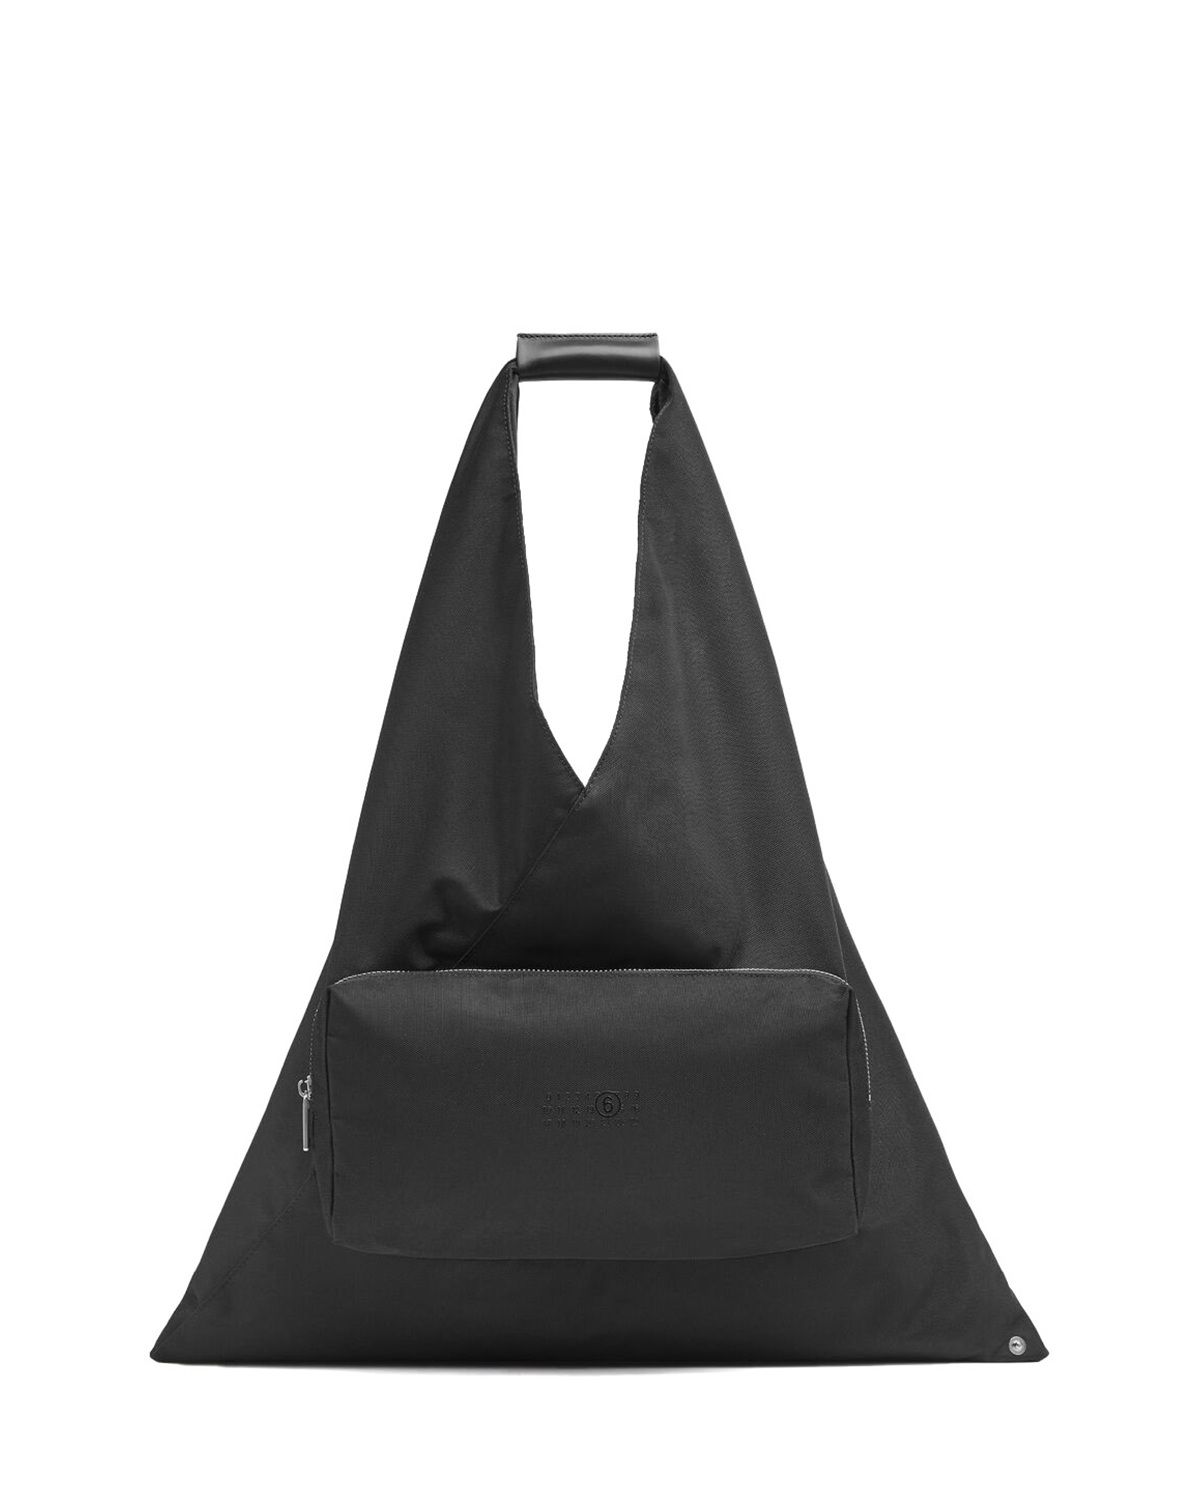 Japanese Pocket Handbag Black